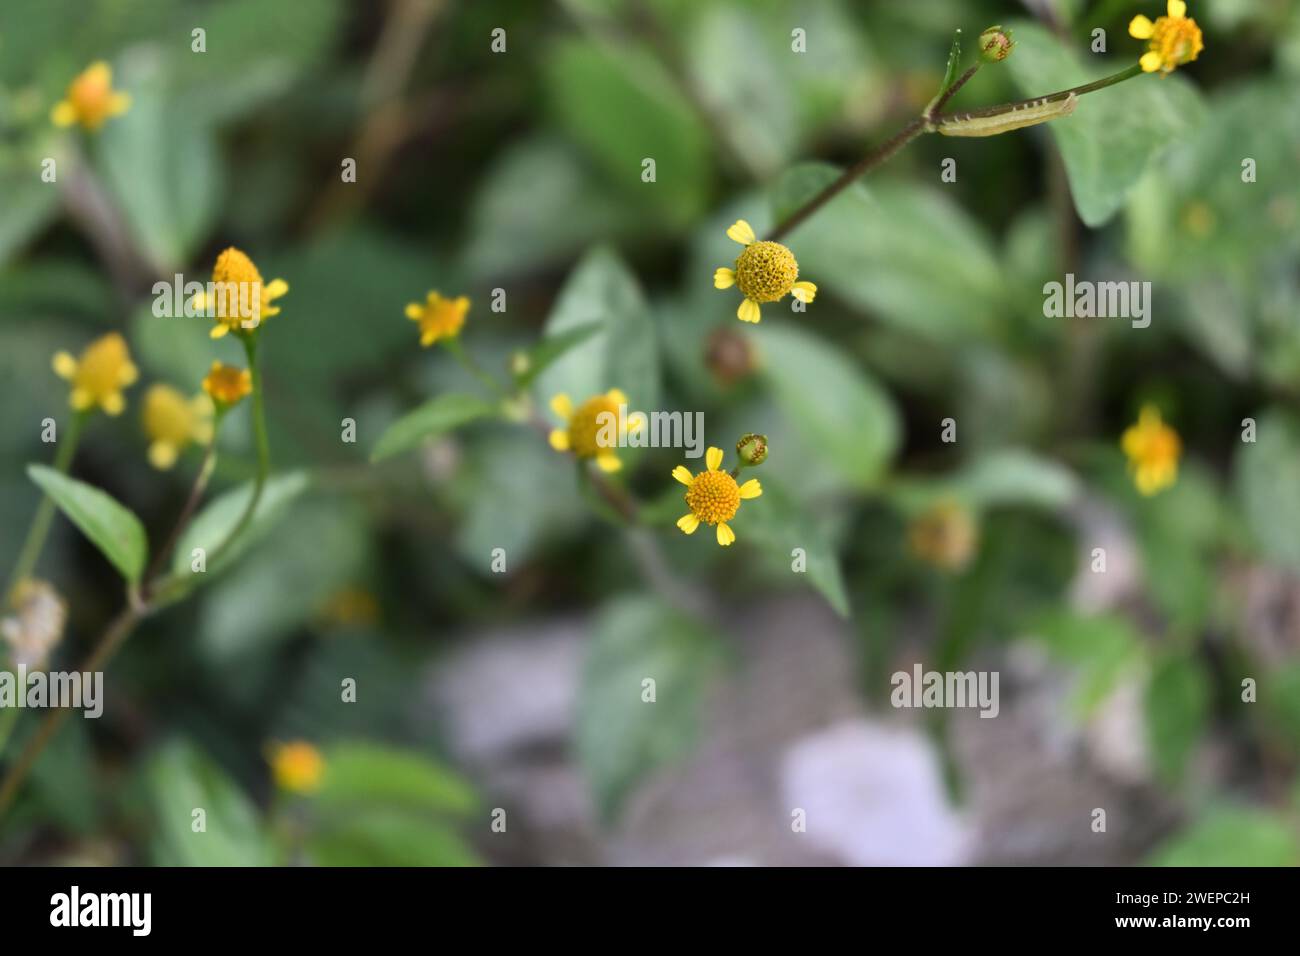 Blick von oben auf die sehr kleinen gelben Blumenköpfe einer Galinsoga-Gattung kleine Wildpflanzen blühen auf einem Rasenbereich Stockfoto